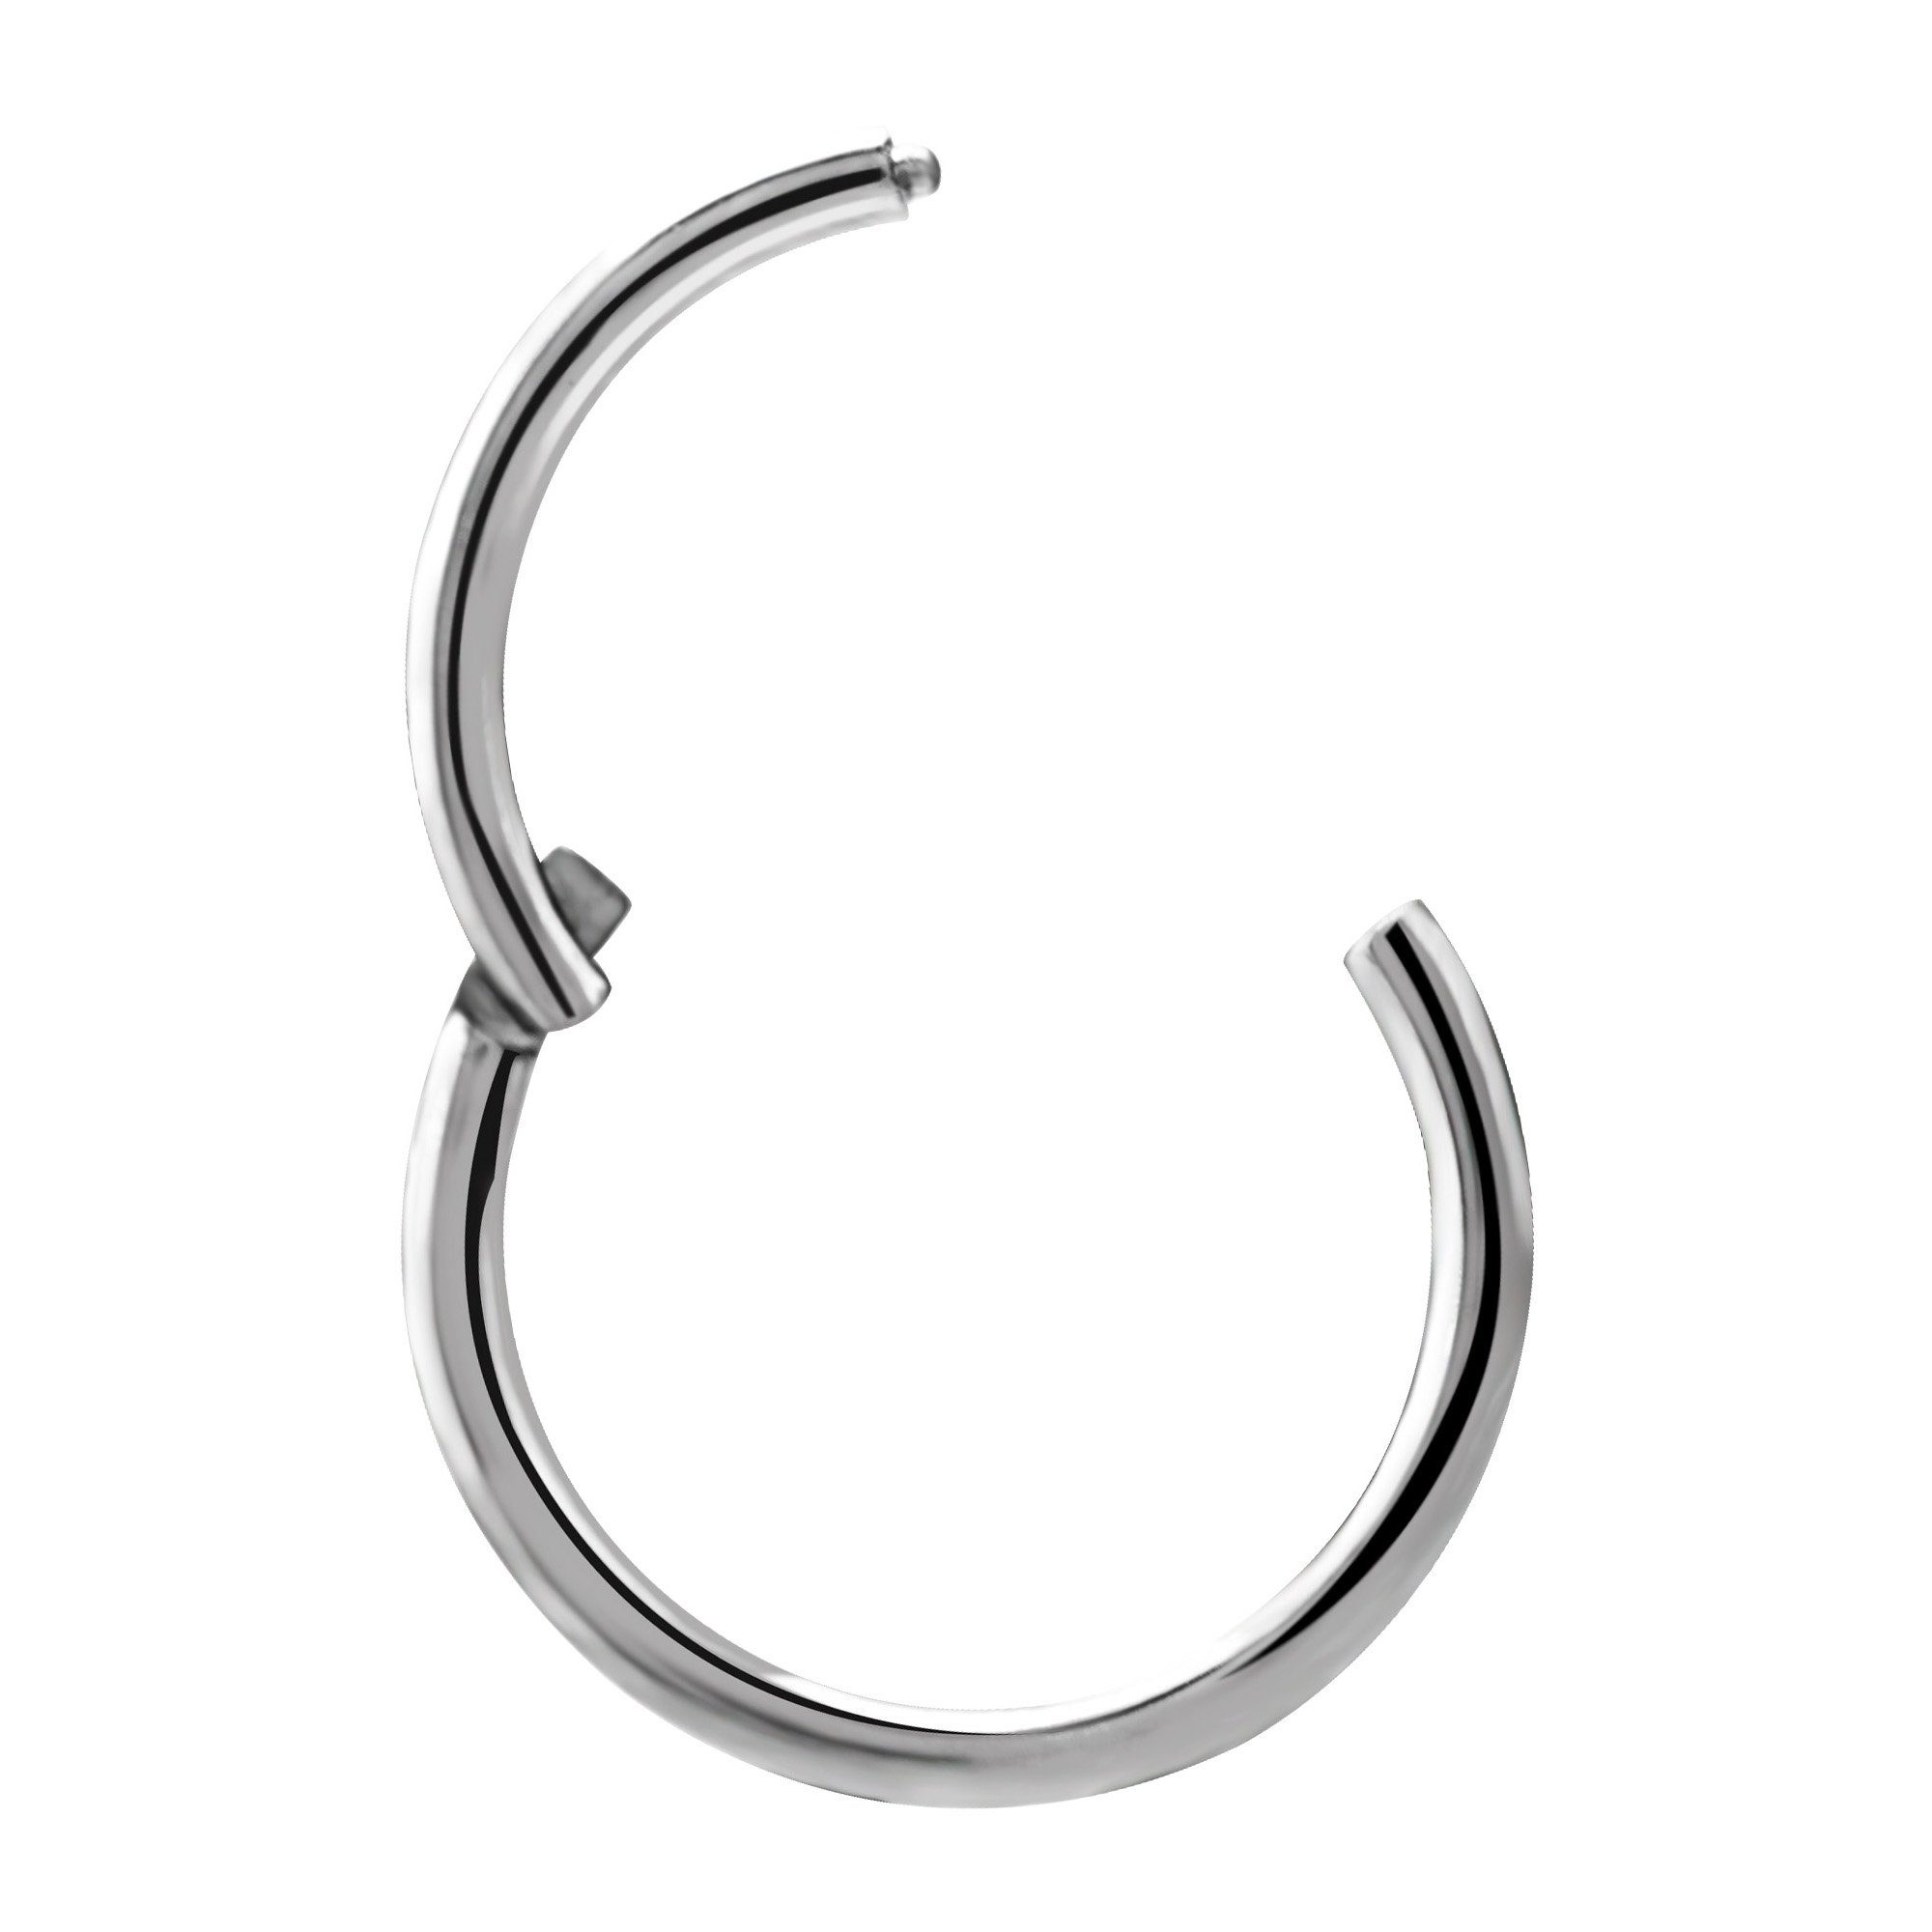 Edelstahl Stärke Segmentring - 1,2mm Durchmesser, 8mm Hinged Karisma Ohrring Ring Clicker Nasenpiercing Piercing Charnier/Conch Silber 316L